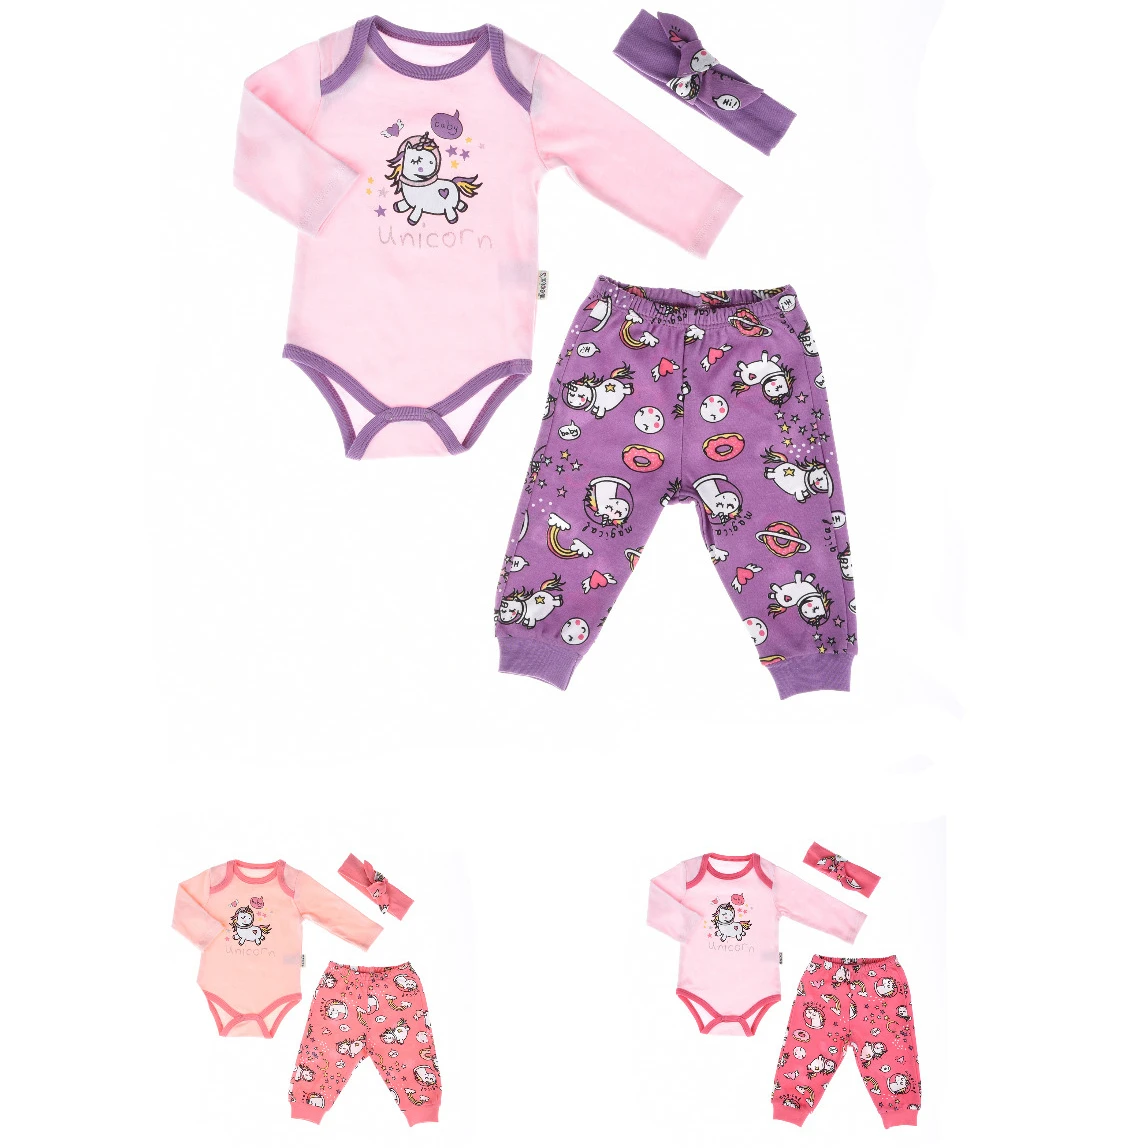 Горячая распродажа! Пижамные комплекты «Минни Маус» из 2 предметов Детские комплекты одежды для девочек с героями мультфильма для девочек; Мягкая хлопковая одежда для малышей на necix бренд